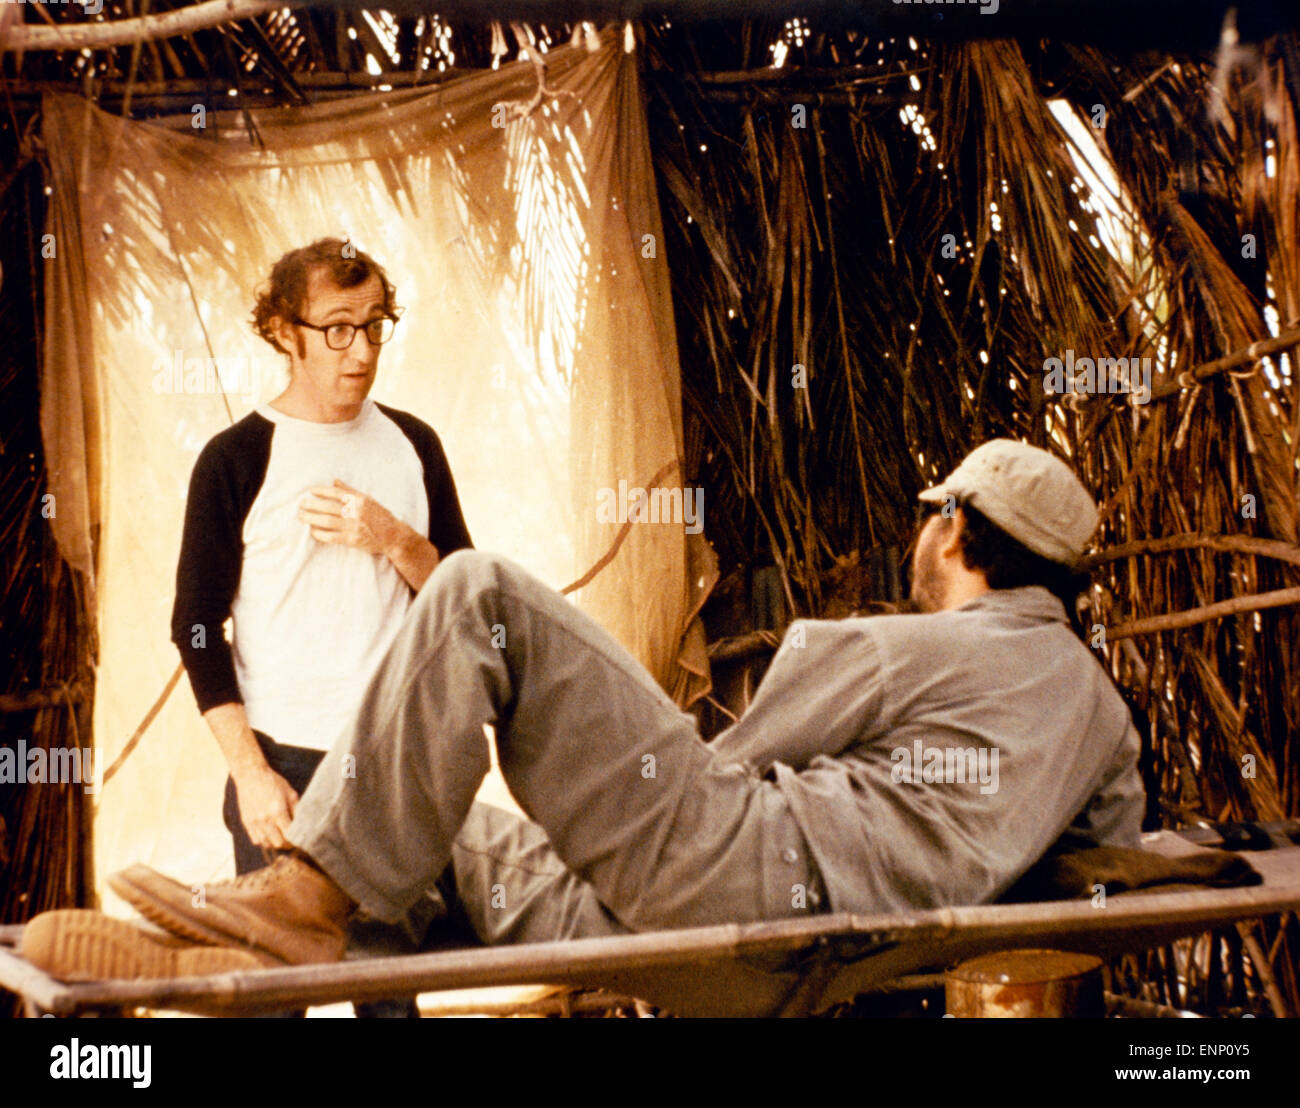 Banane, USA 1971, Regie: Woody Allen, Darsteller: Woody Allen Foto Stock